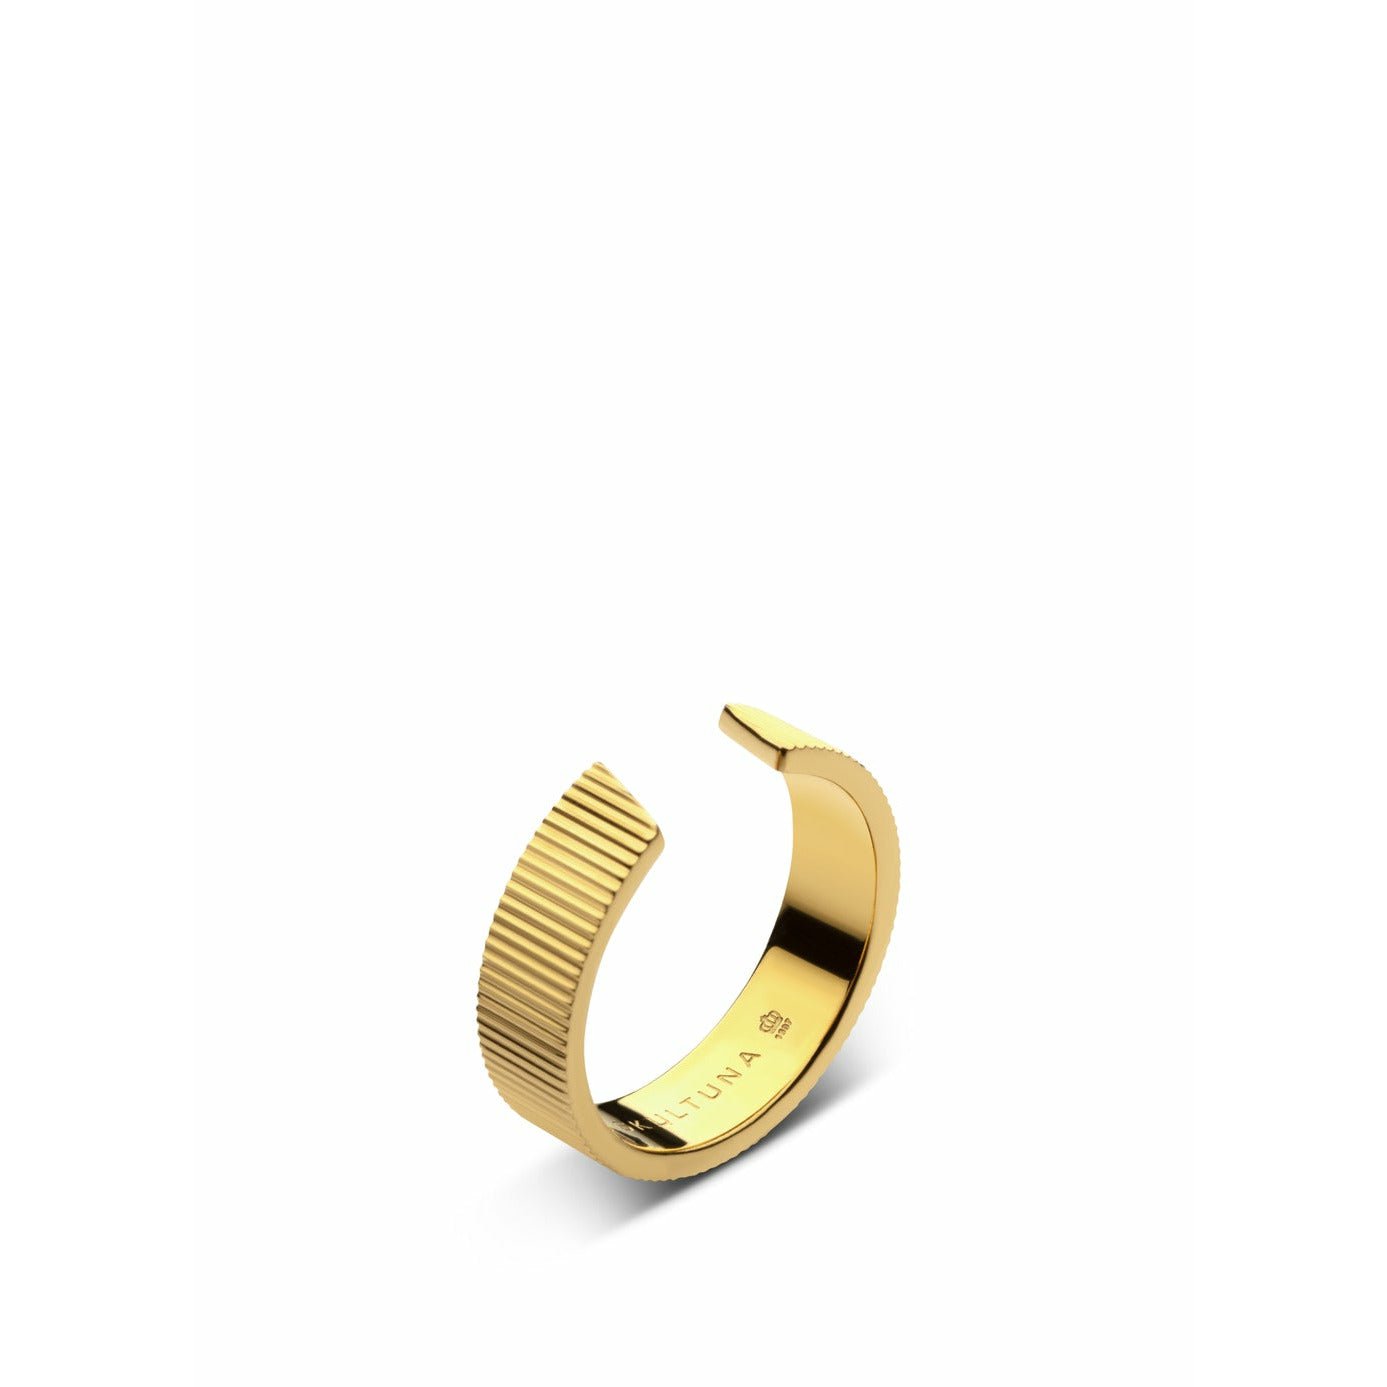 Szultuna pierścień żebrowany szeroki średnia 316 L stalowa złota, Ø1,73 cm